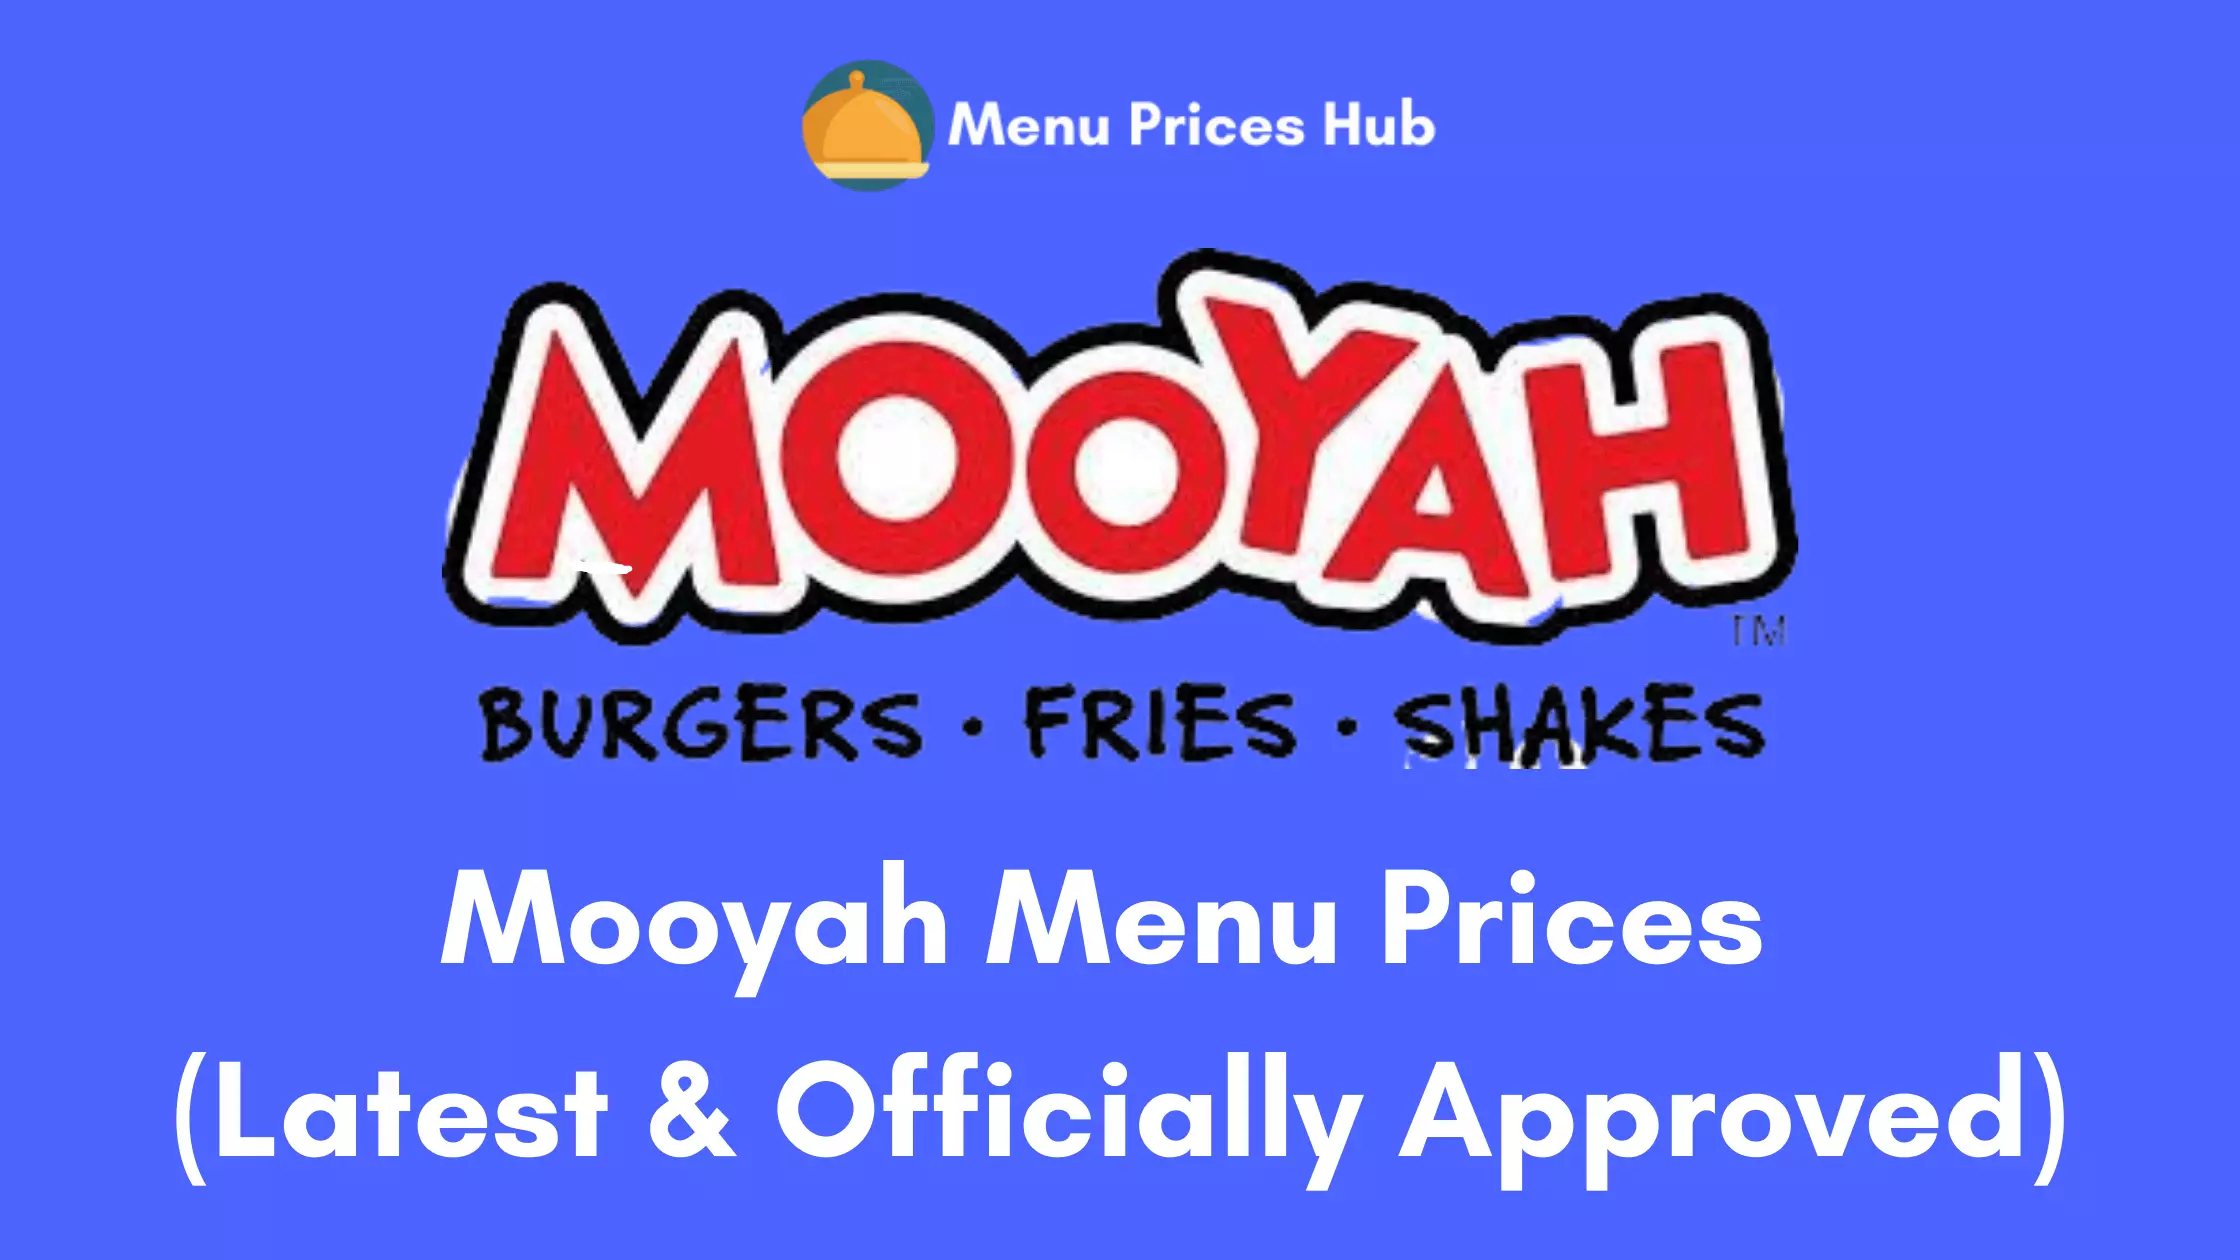 Mooyah Menu Prices